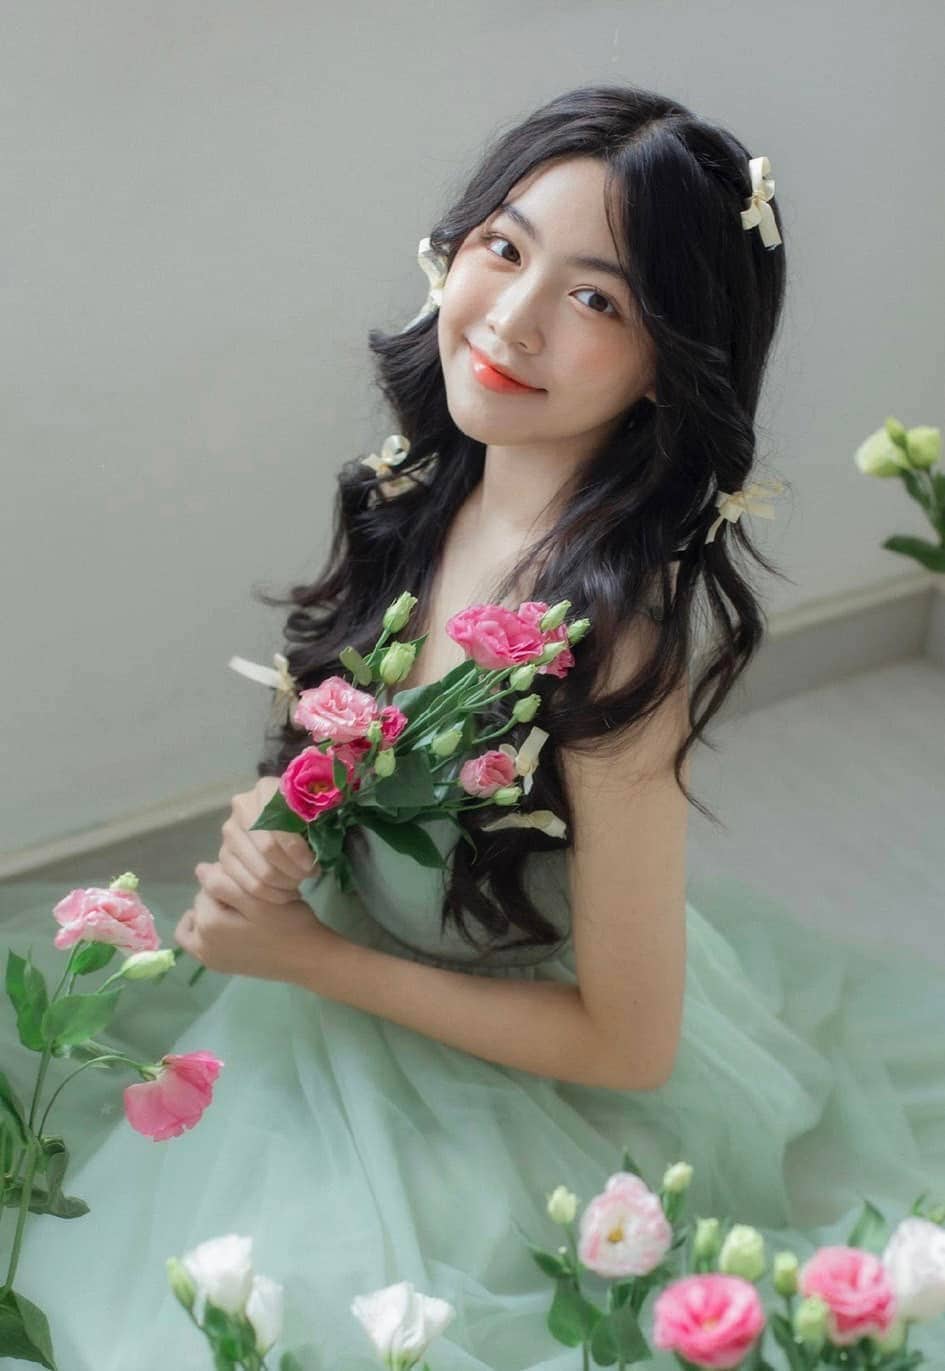 Con gái Quyền Linh lại gây sốt MXH với bộ ảnh ngọt ngào, kỷ niệm lần đầu chụp quảng cáo chuyên nghiệp - Ảnh 11